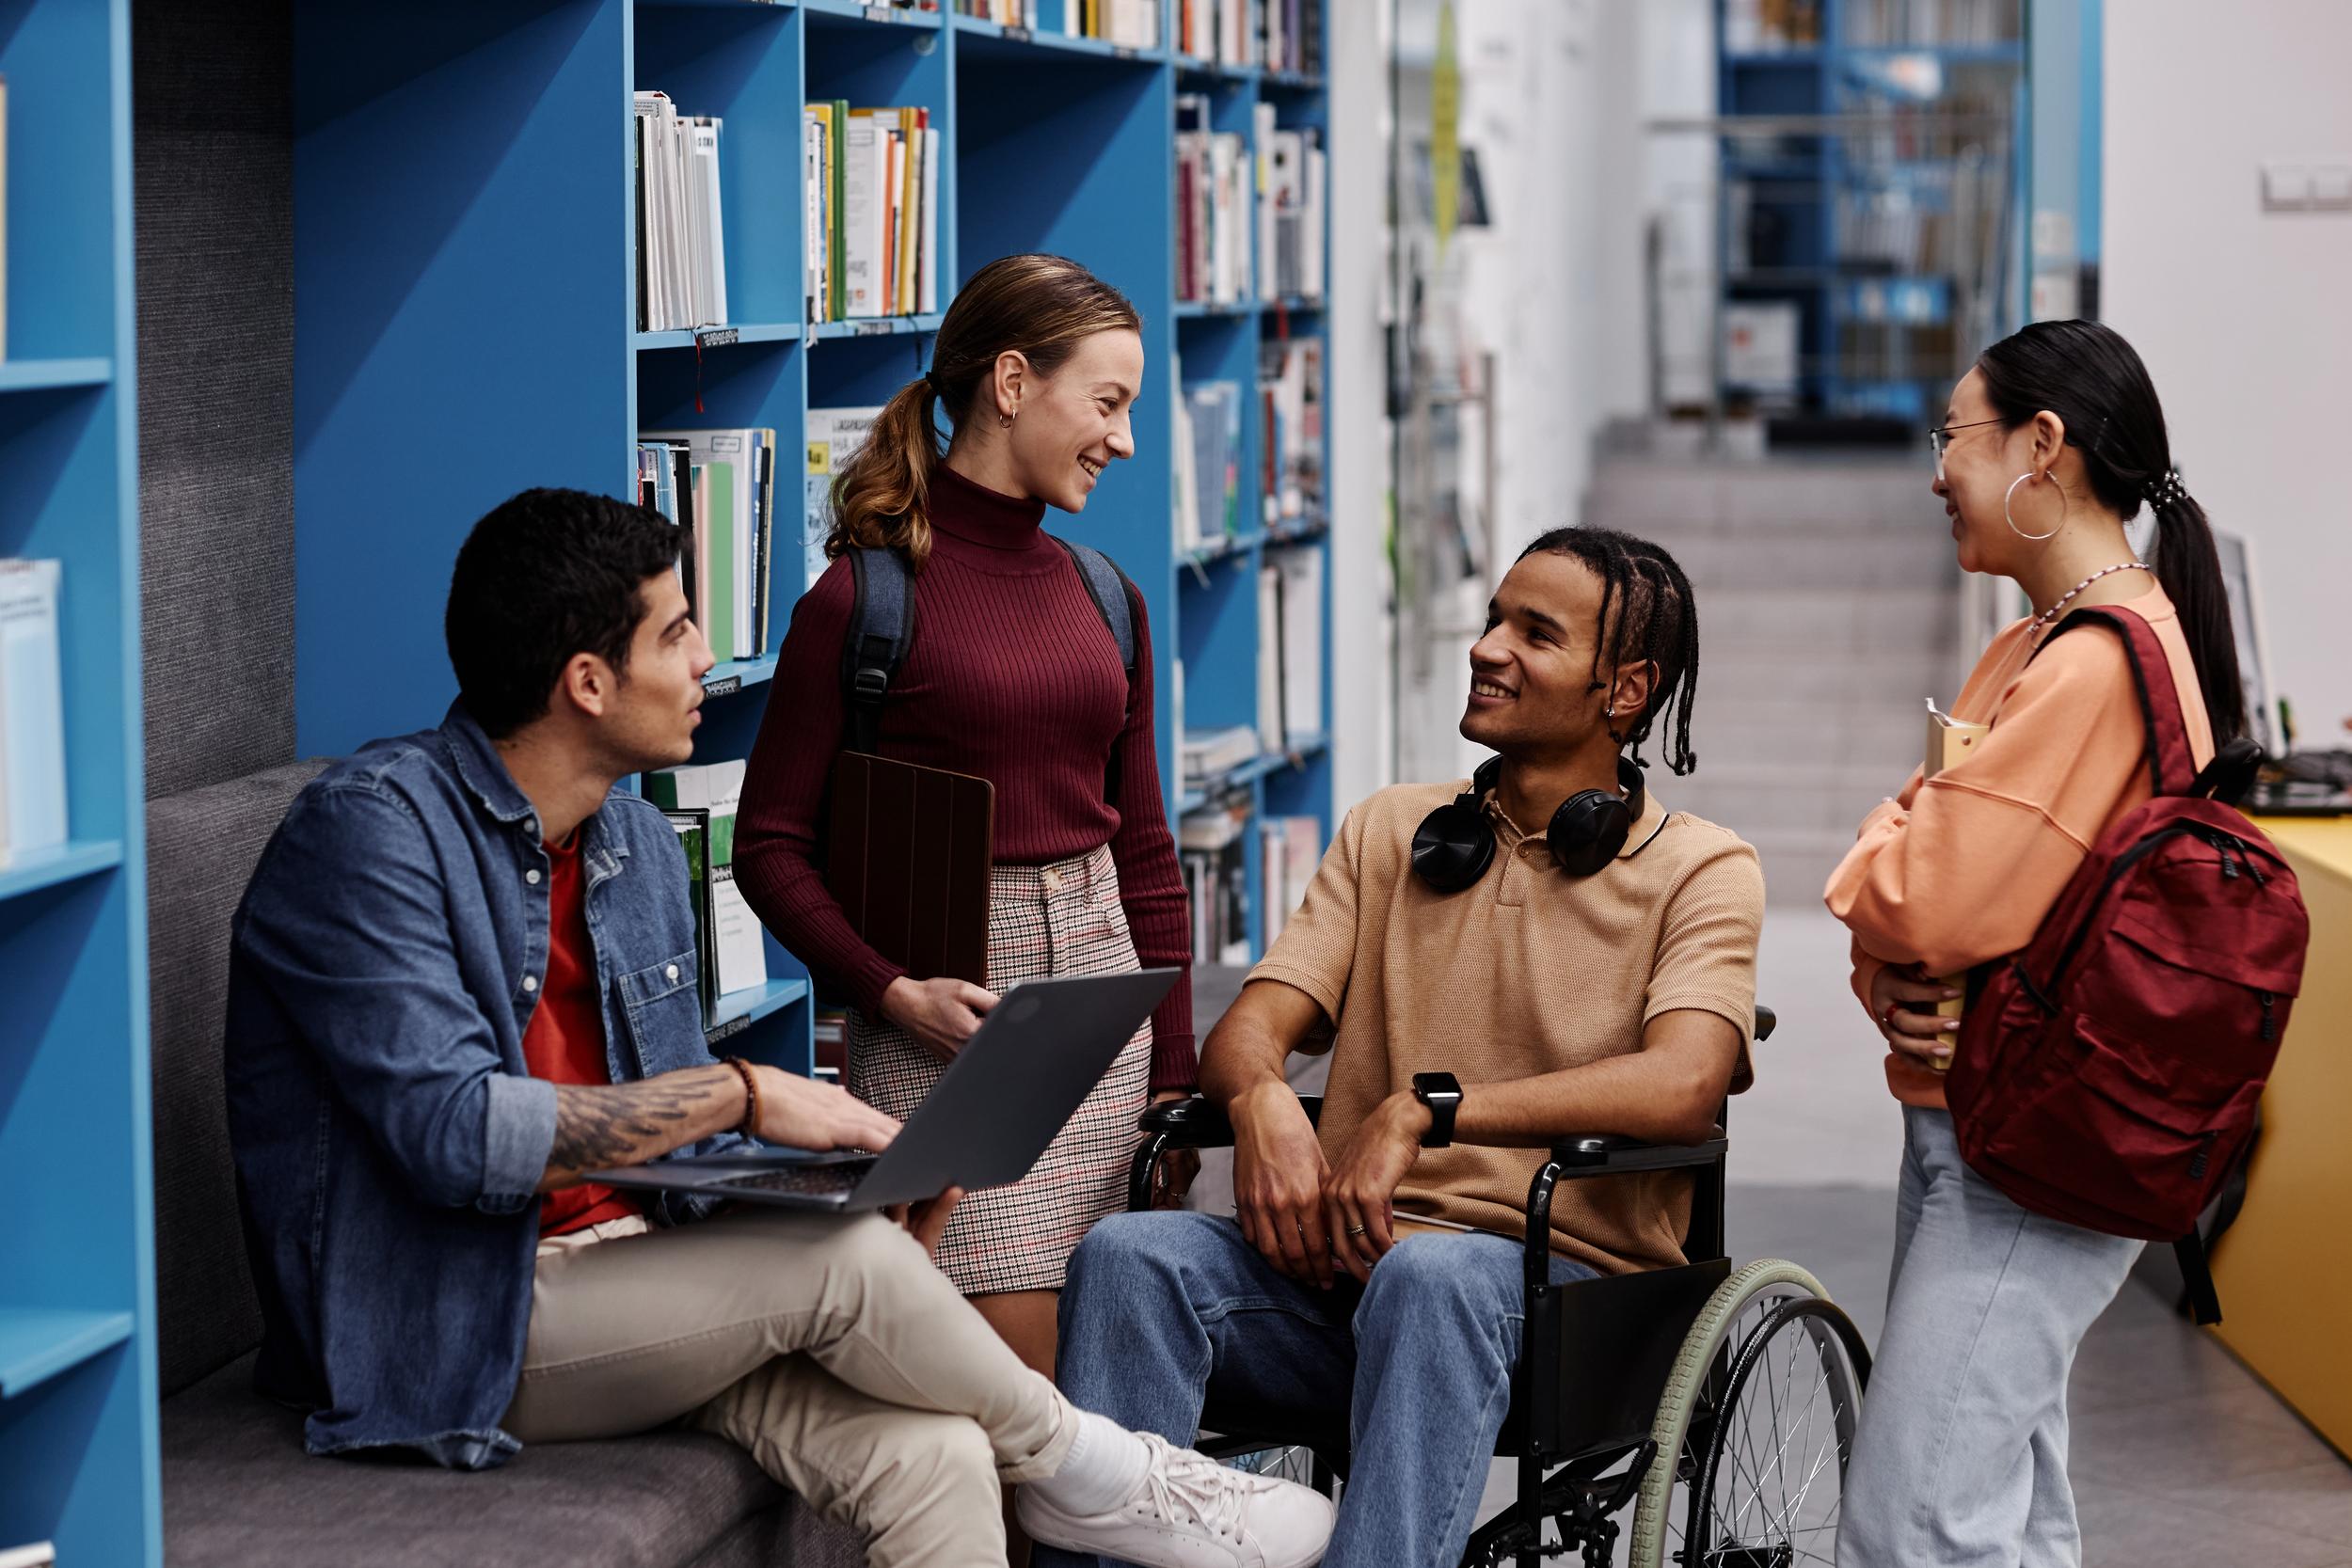 Eine Gruppe von jungen Studentinnen und Studenten, darunter ein Mann im Rollstuhl, unterhalten sich fröhlich in einer Bibliothek.